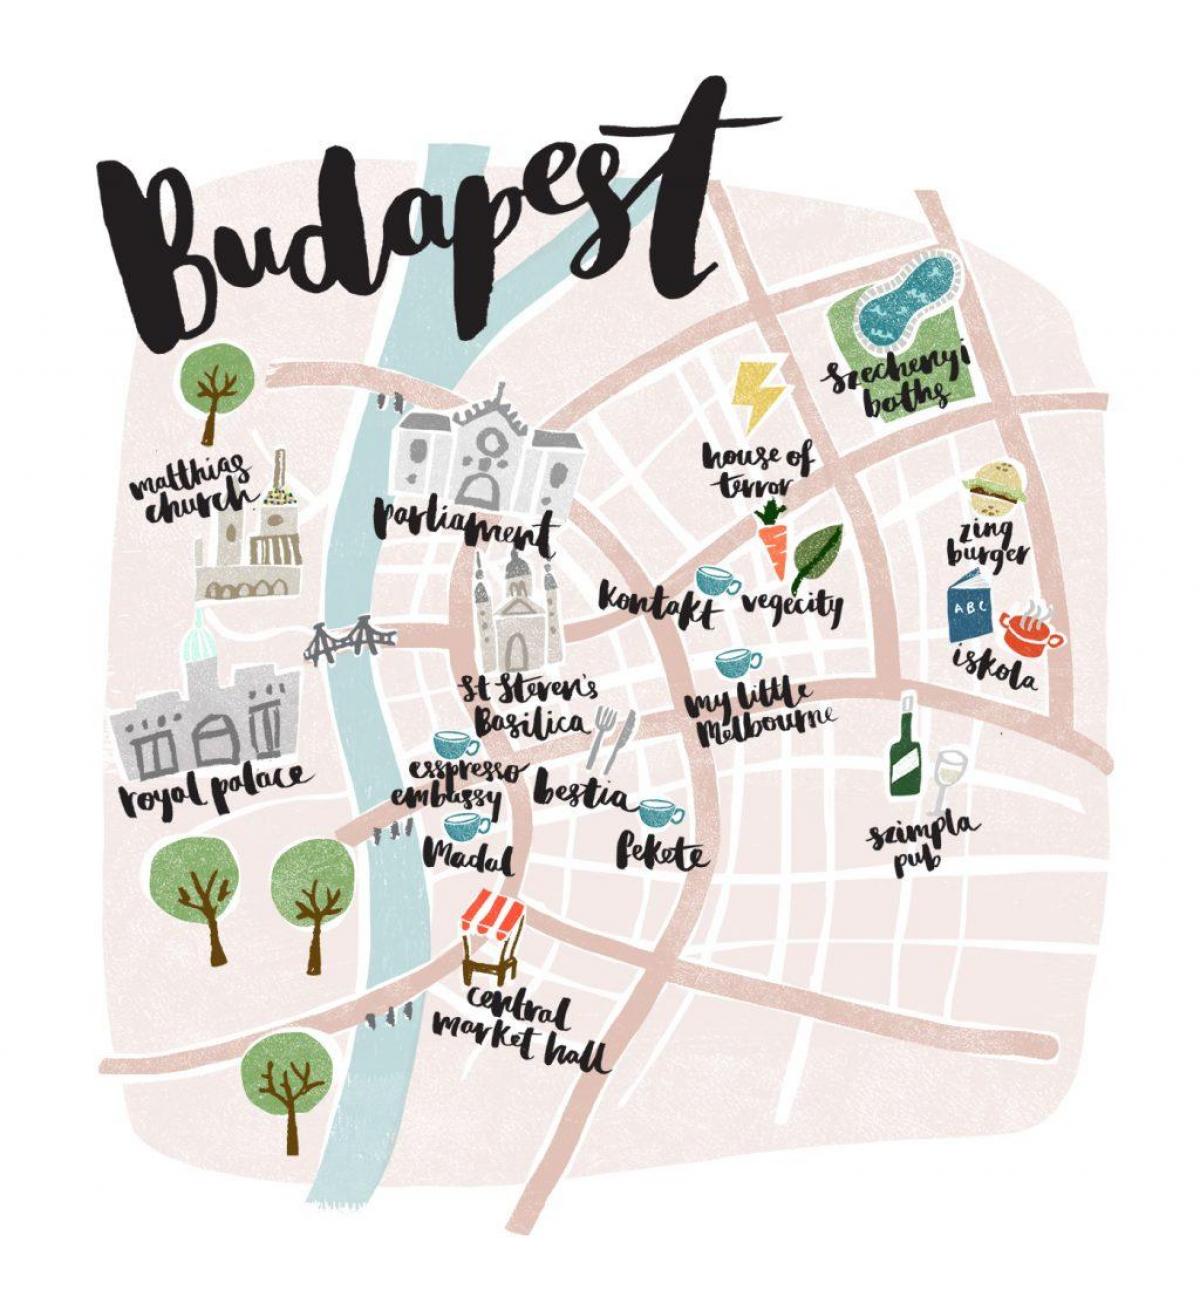 Budapeşte çevrimdışı haritası 